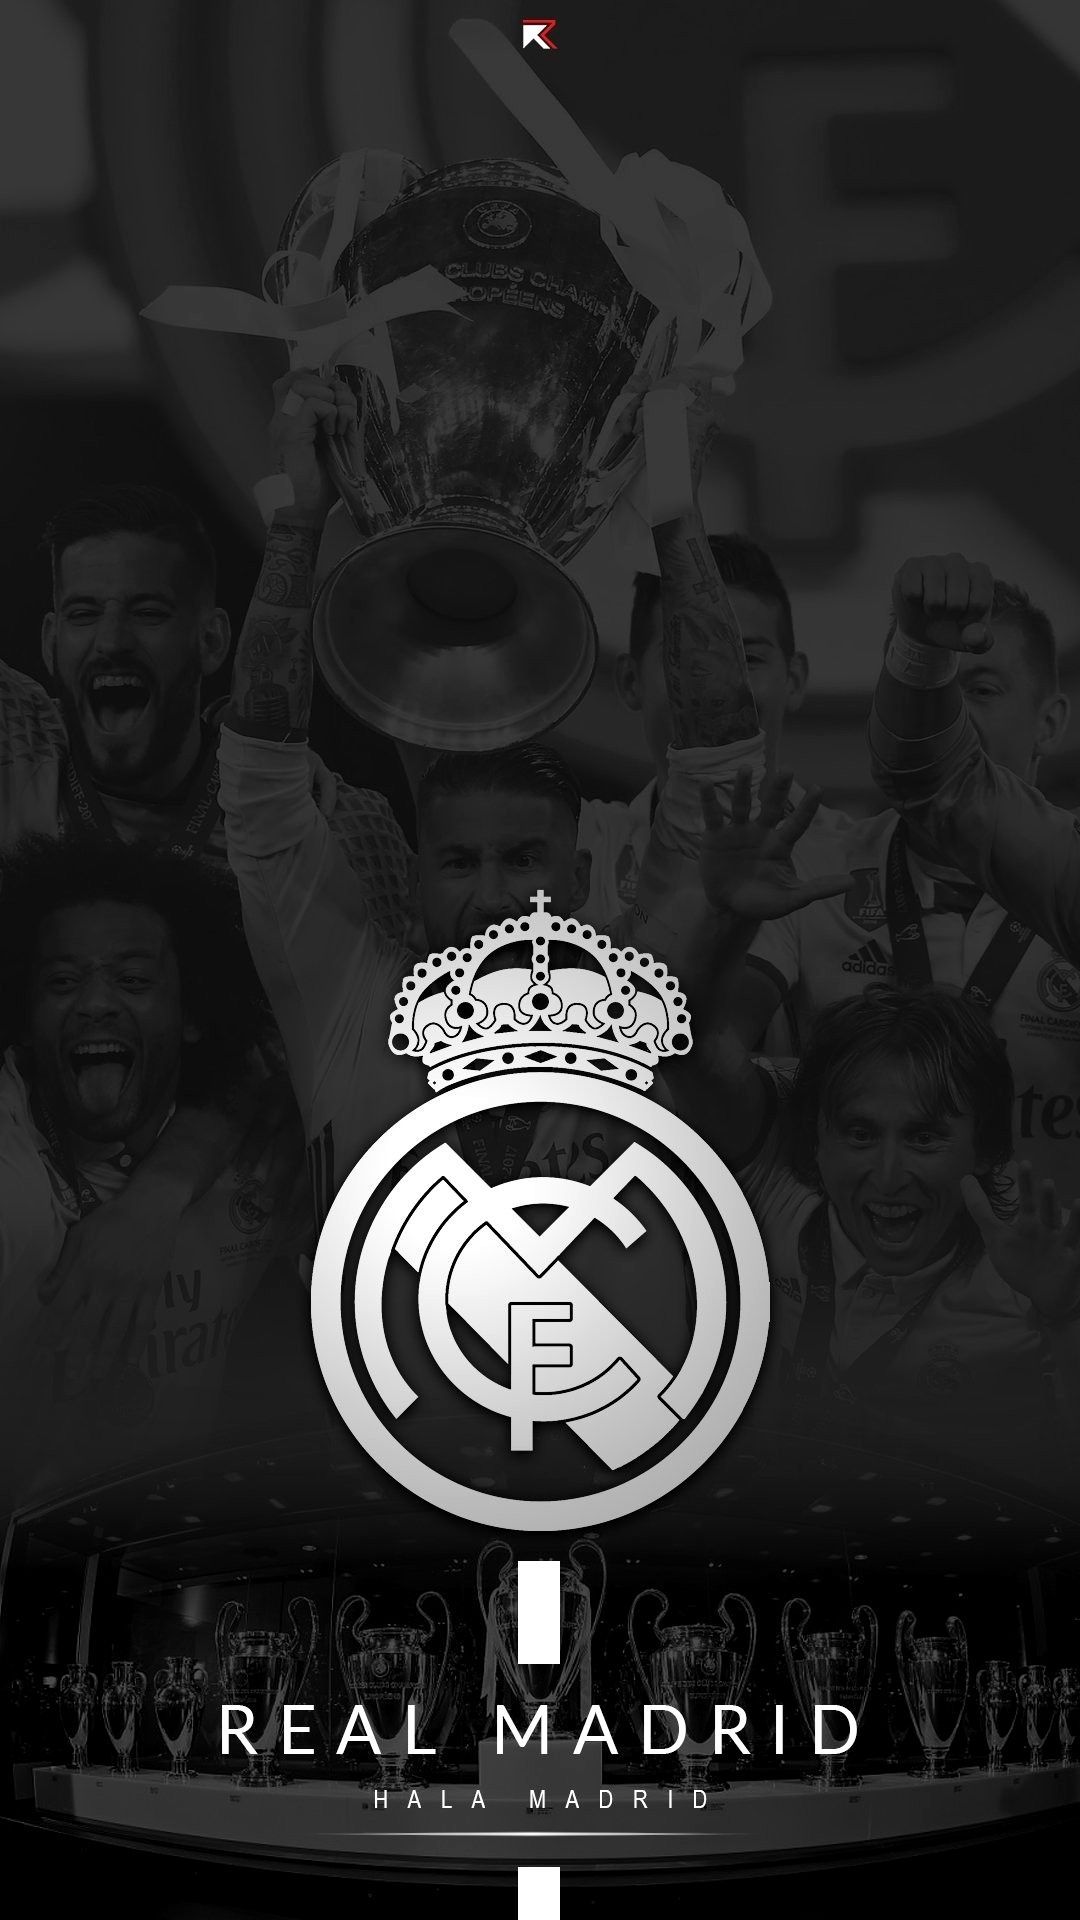 Real Madrid Hintergrundbild 1080x1920. Real Madrid Wallpaper 4K iPhone Trick. Real madrid wallpaper, Madrid wallpaper, Real madrid team